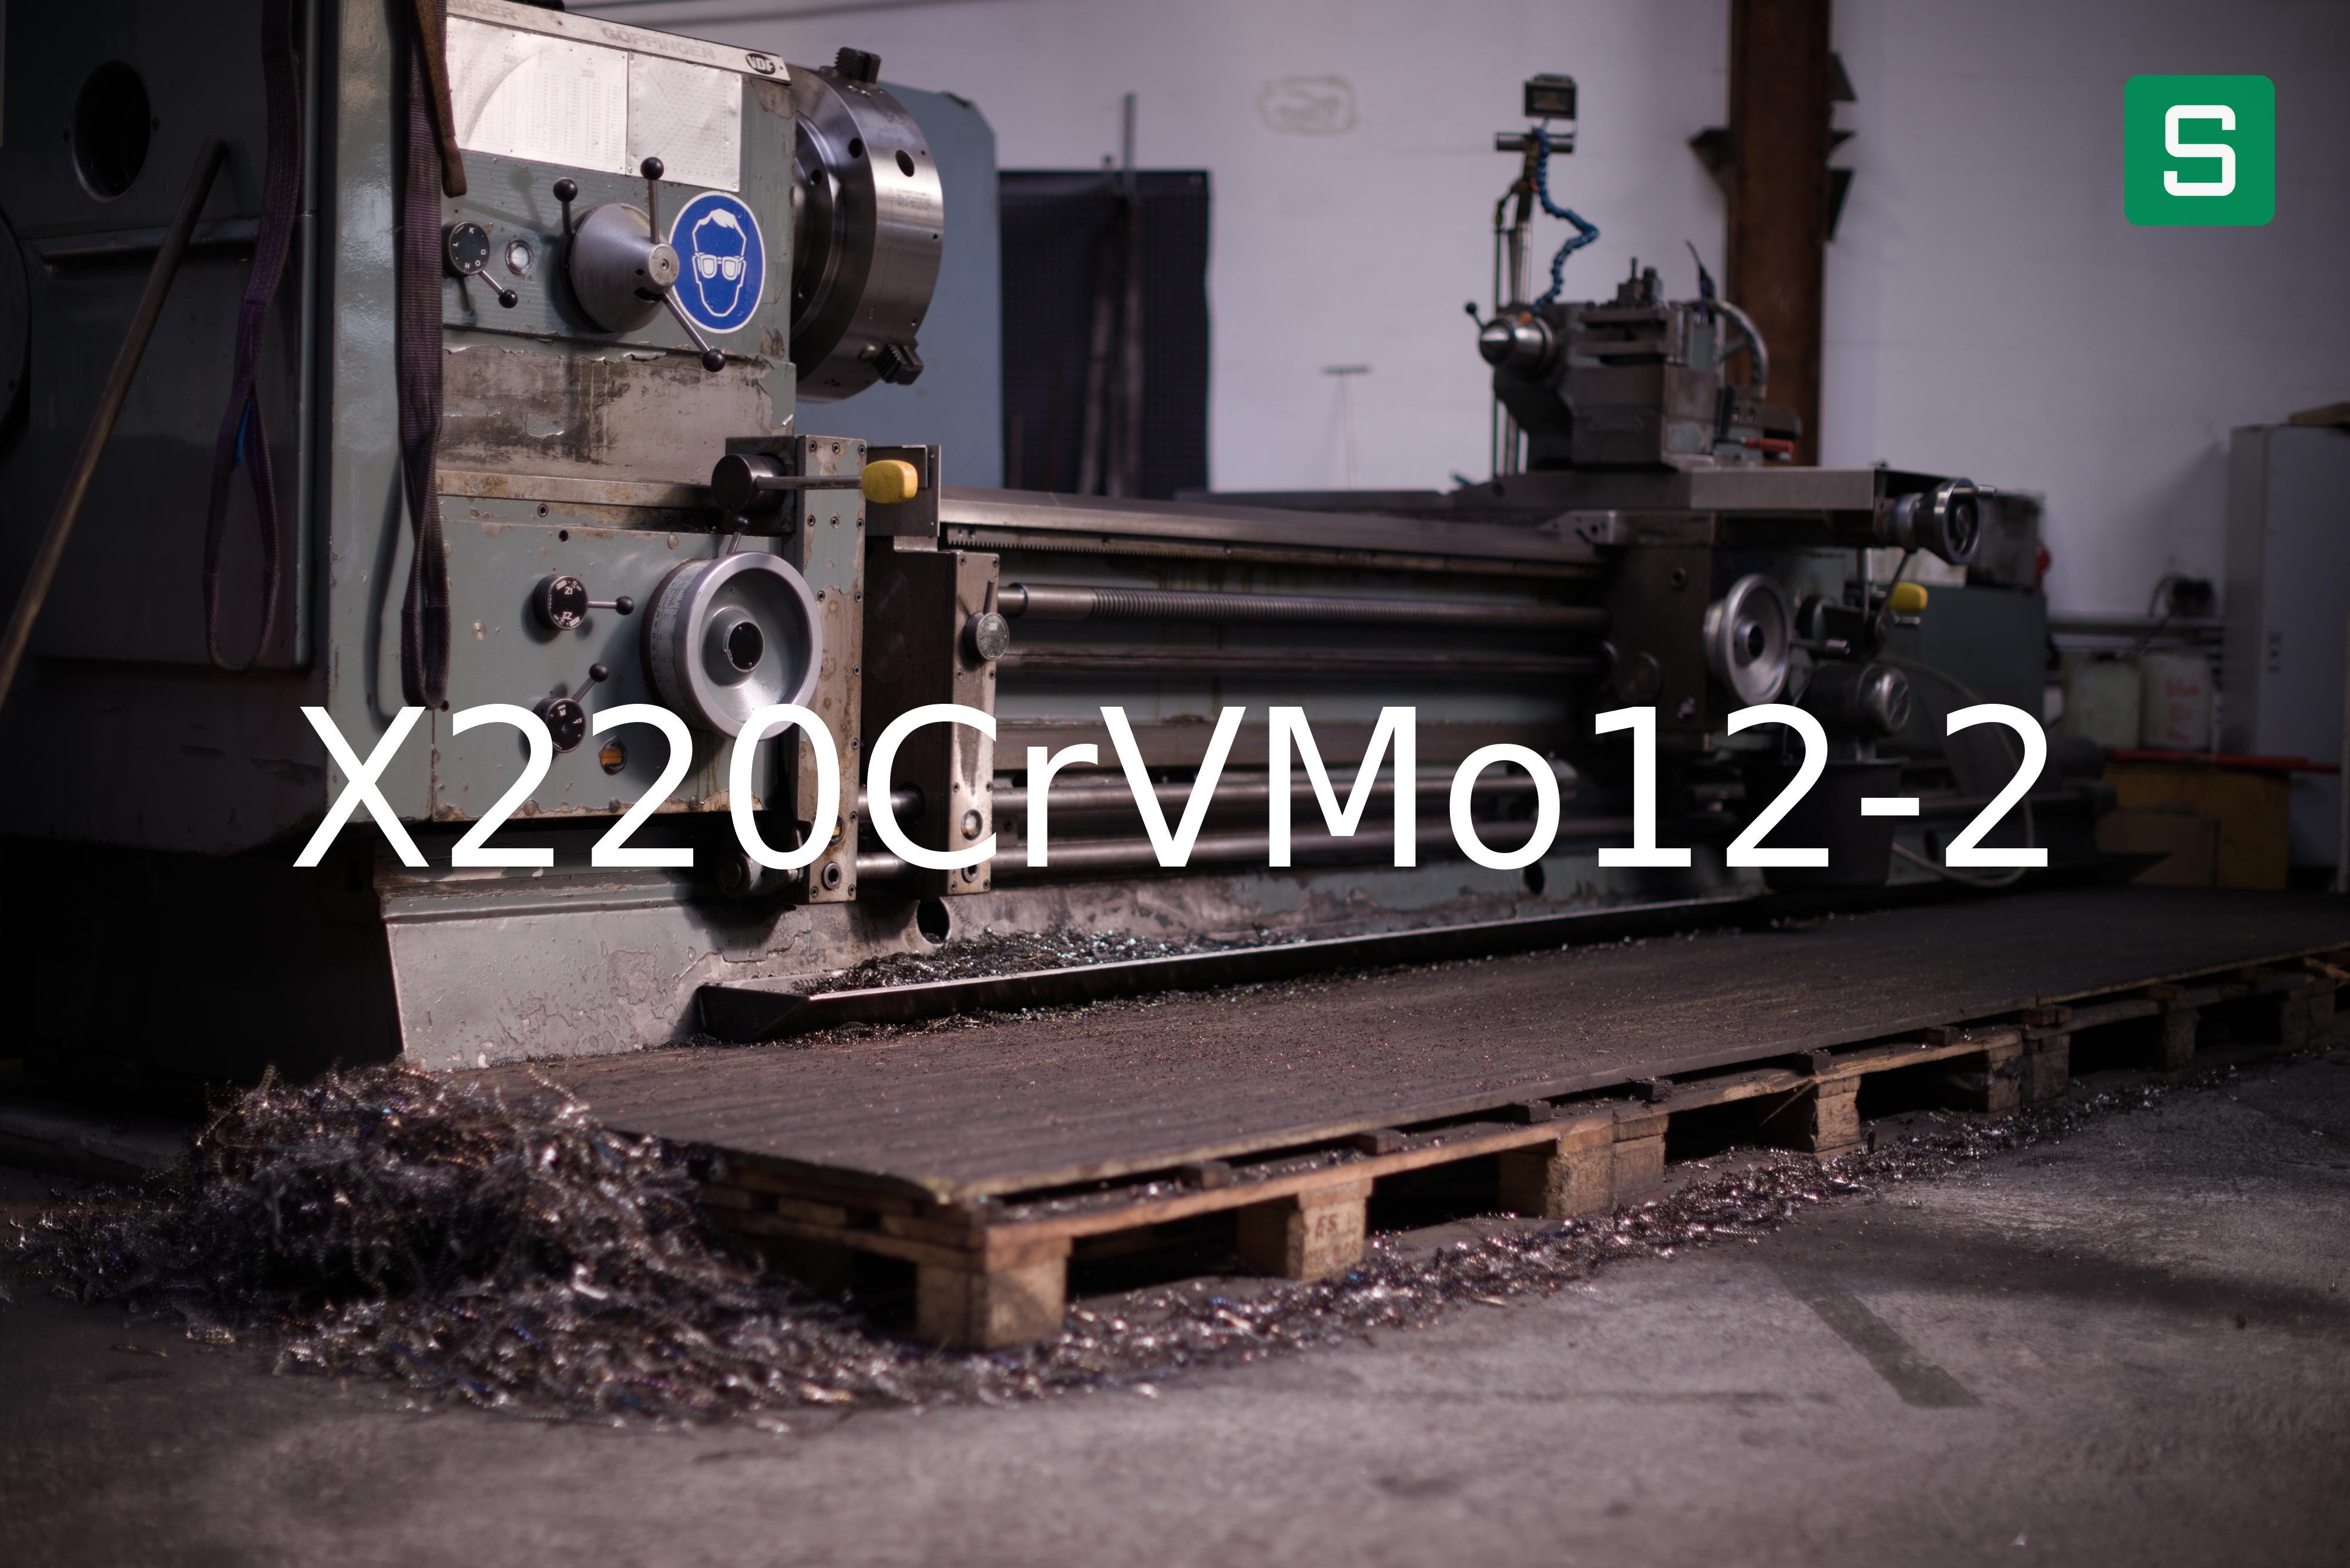 Steel Material: X220CrVMo12-2